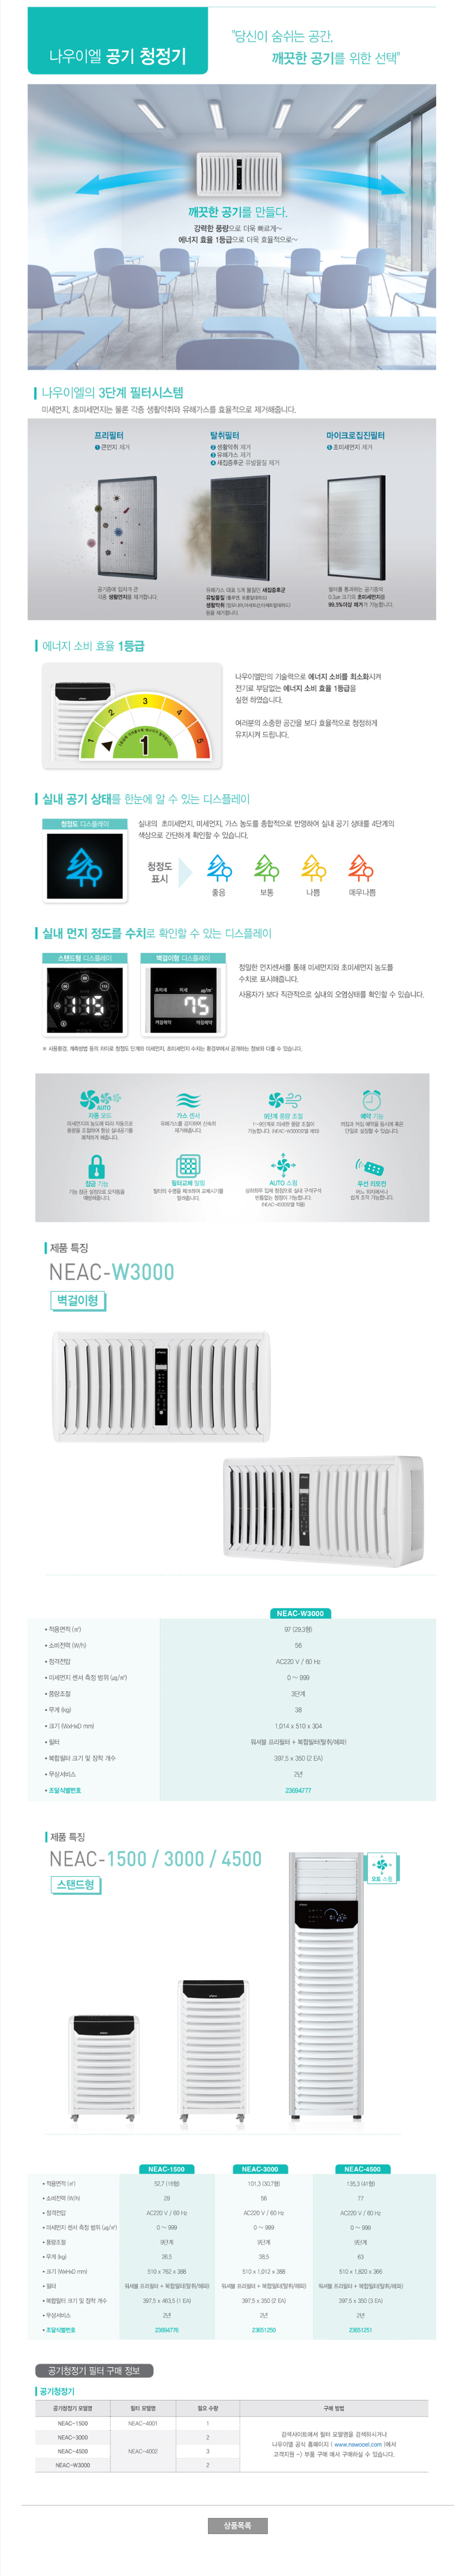 나우이엘 공기청정기 NEAC-W3000 (30평형)